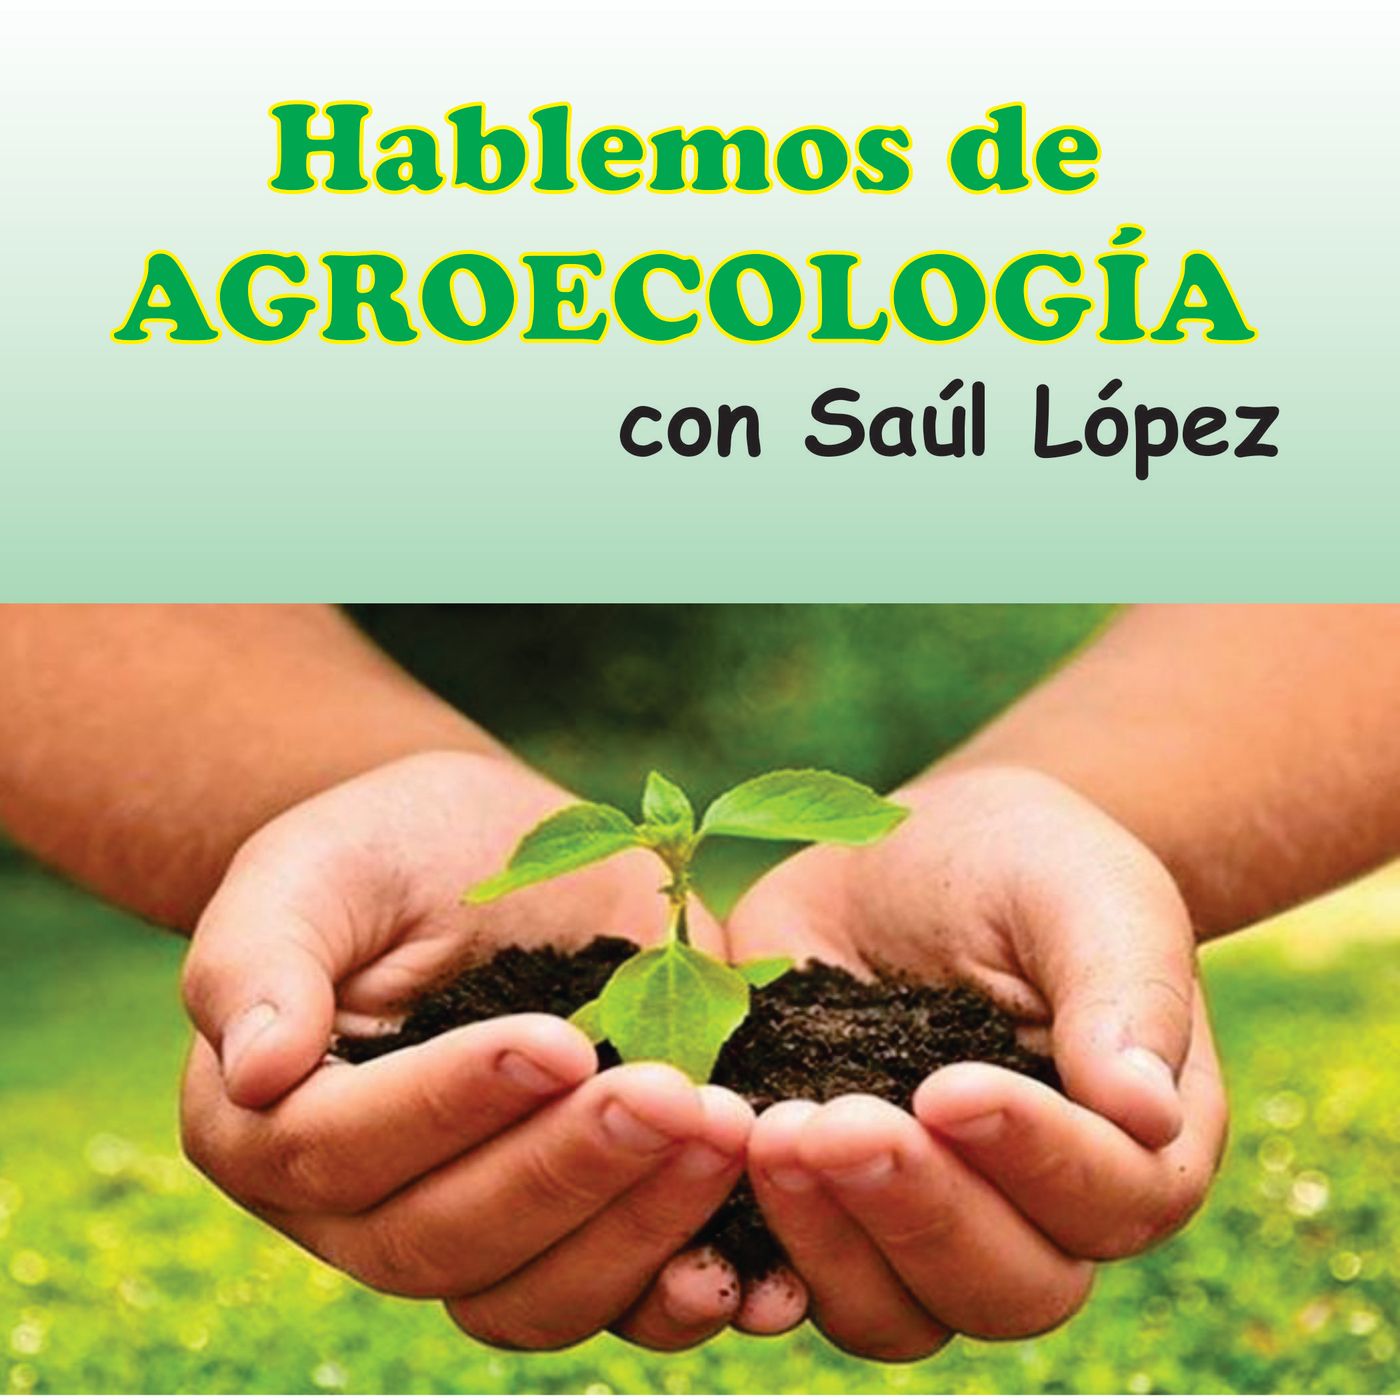 Episodio 2 Hablemos de Agro ecología: Planificación de fincas